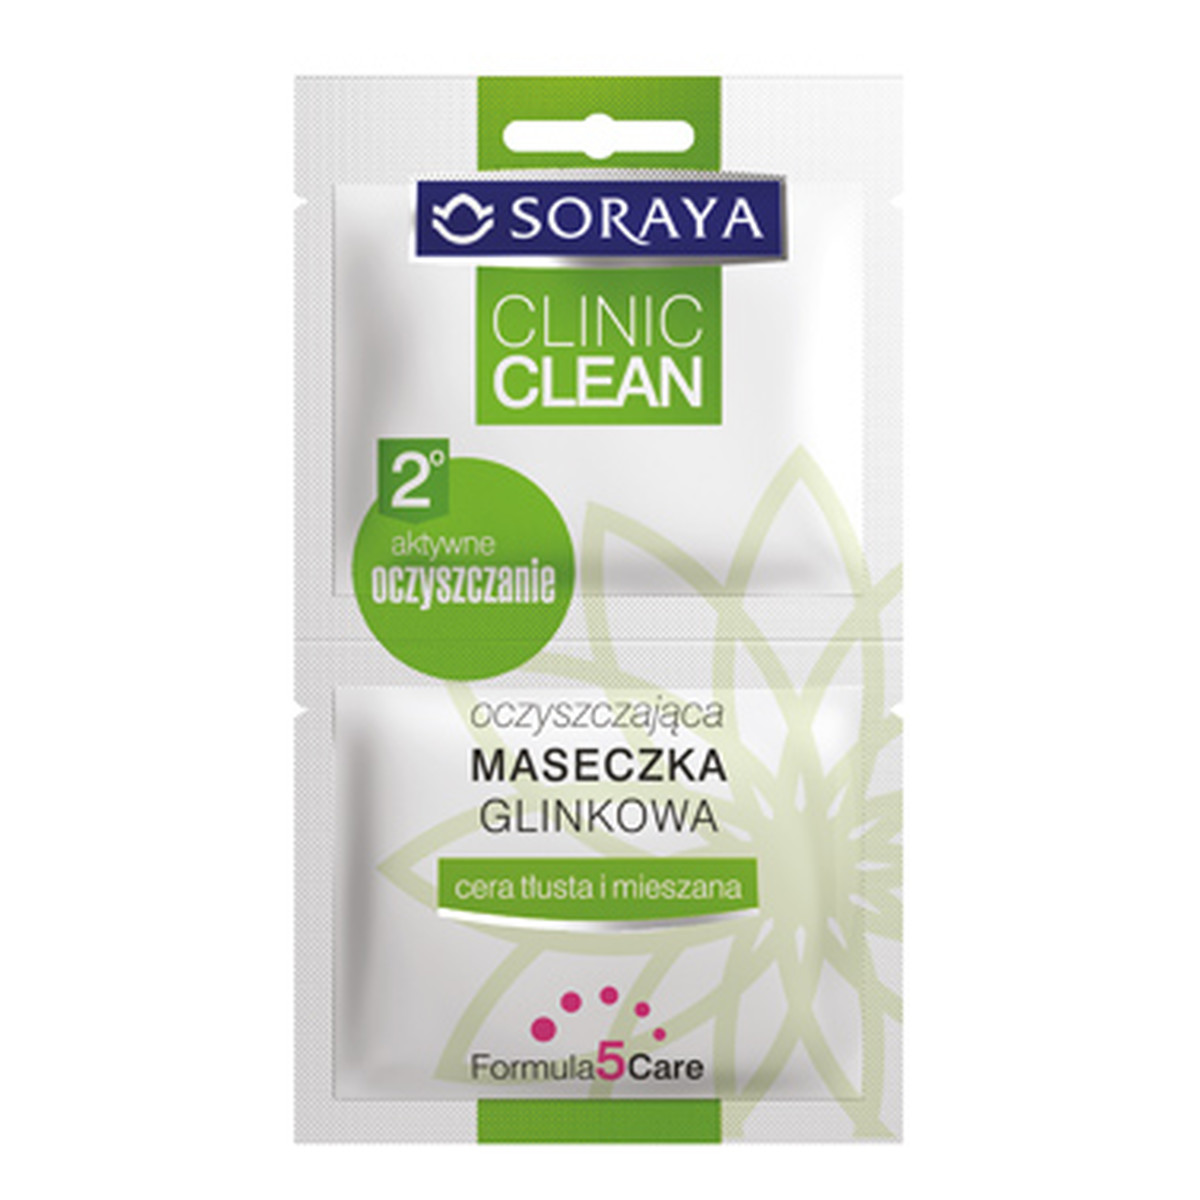 Soraya Clinic Clean Oczyszczająca Maseczka Glinkowa 10ml